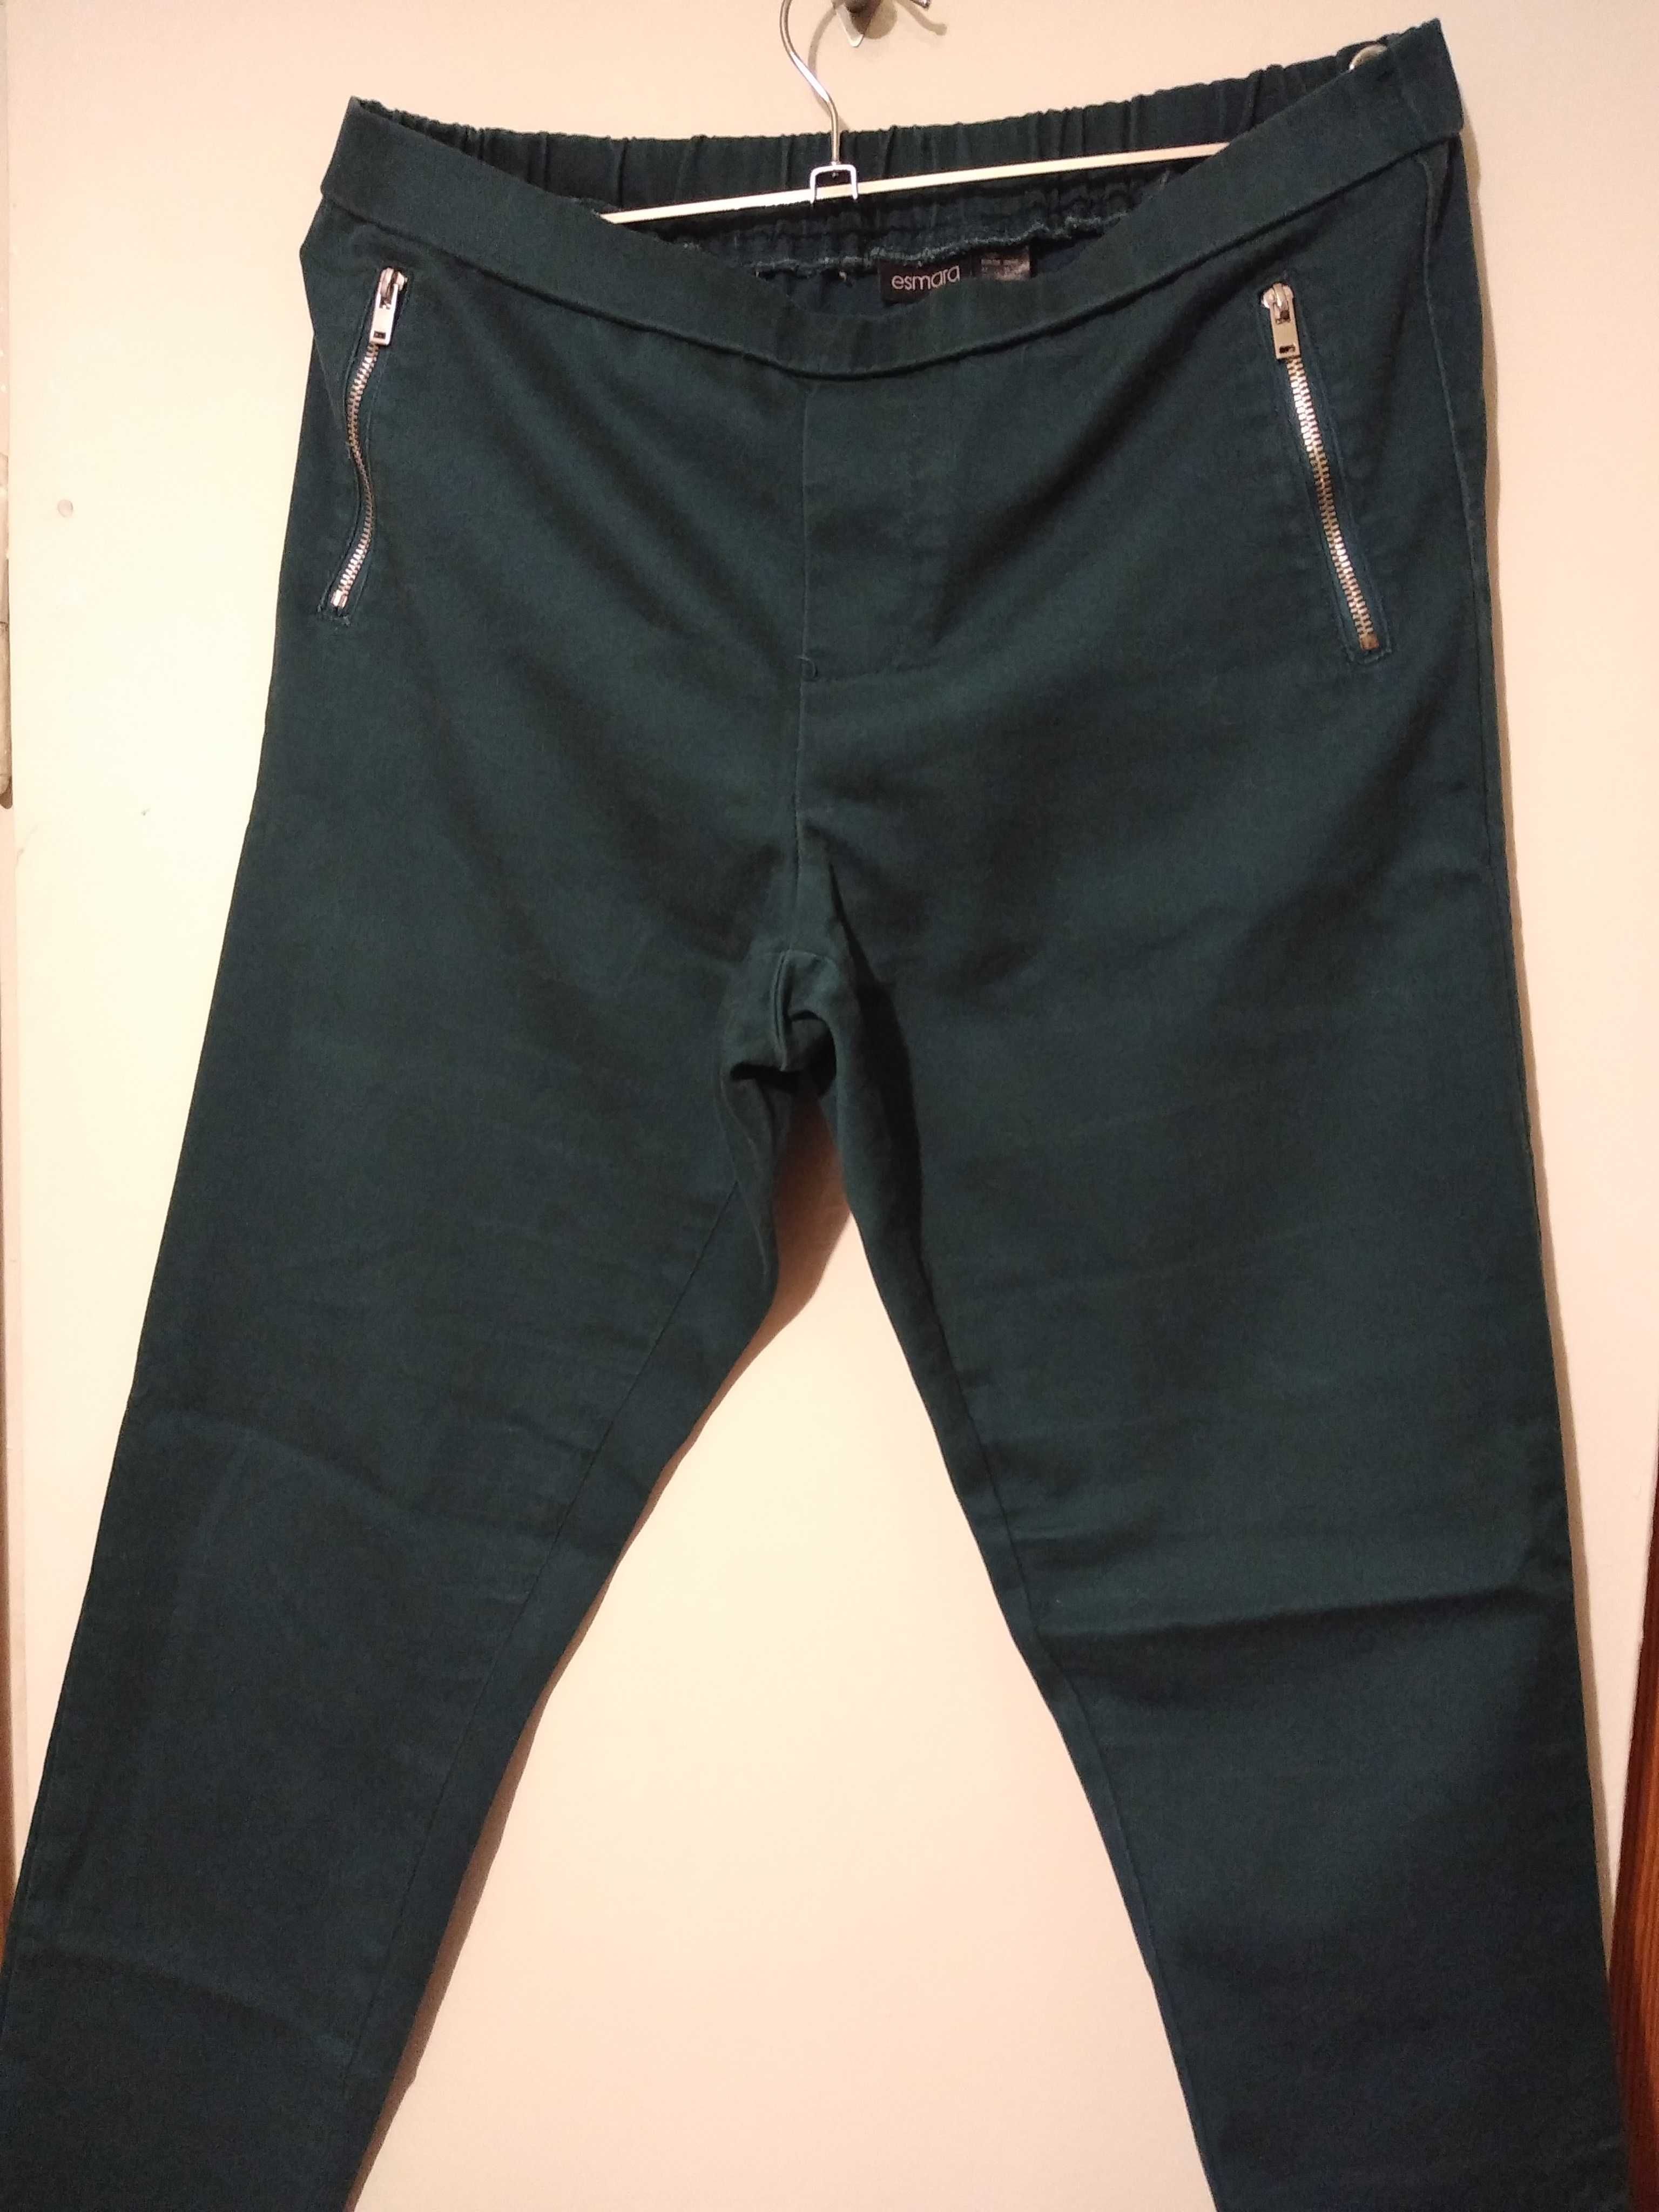 Spodnie jeansowe joggery Esmara ciemnozielone rozmiar 38-46